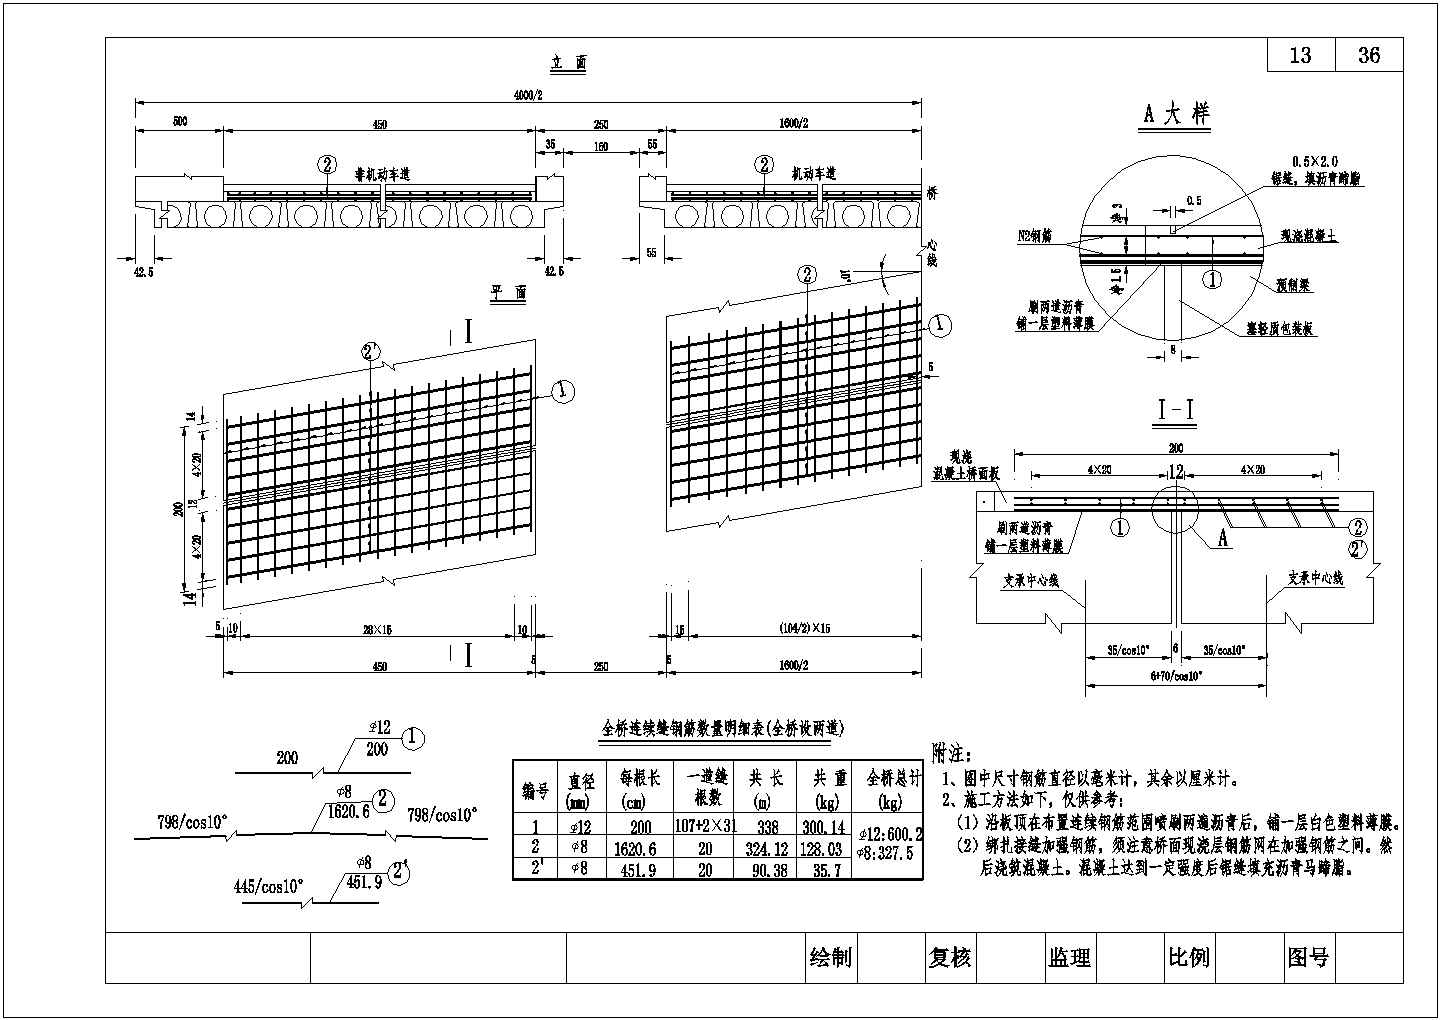 16米先张法预应力混凝土空心板桥面连续钢筋布置节点设计详图